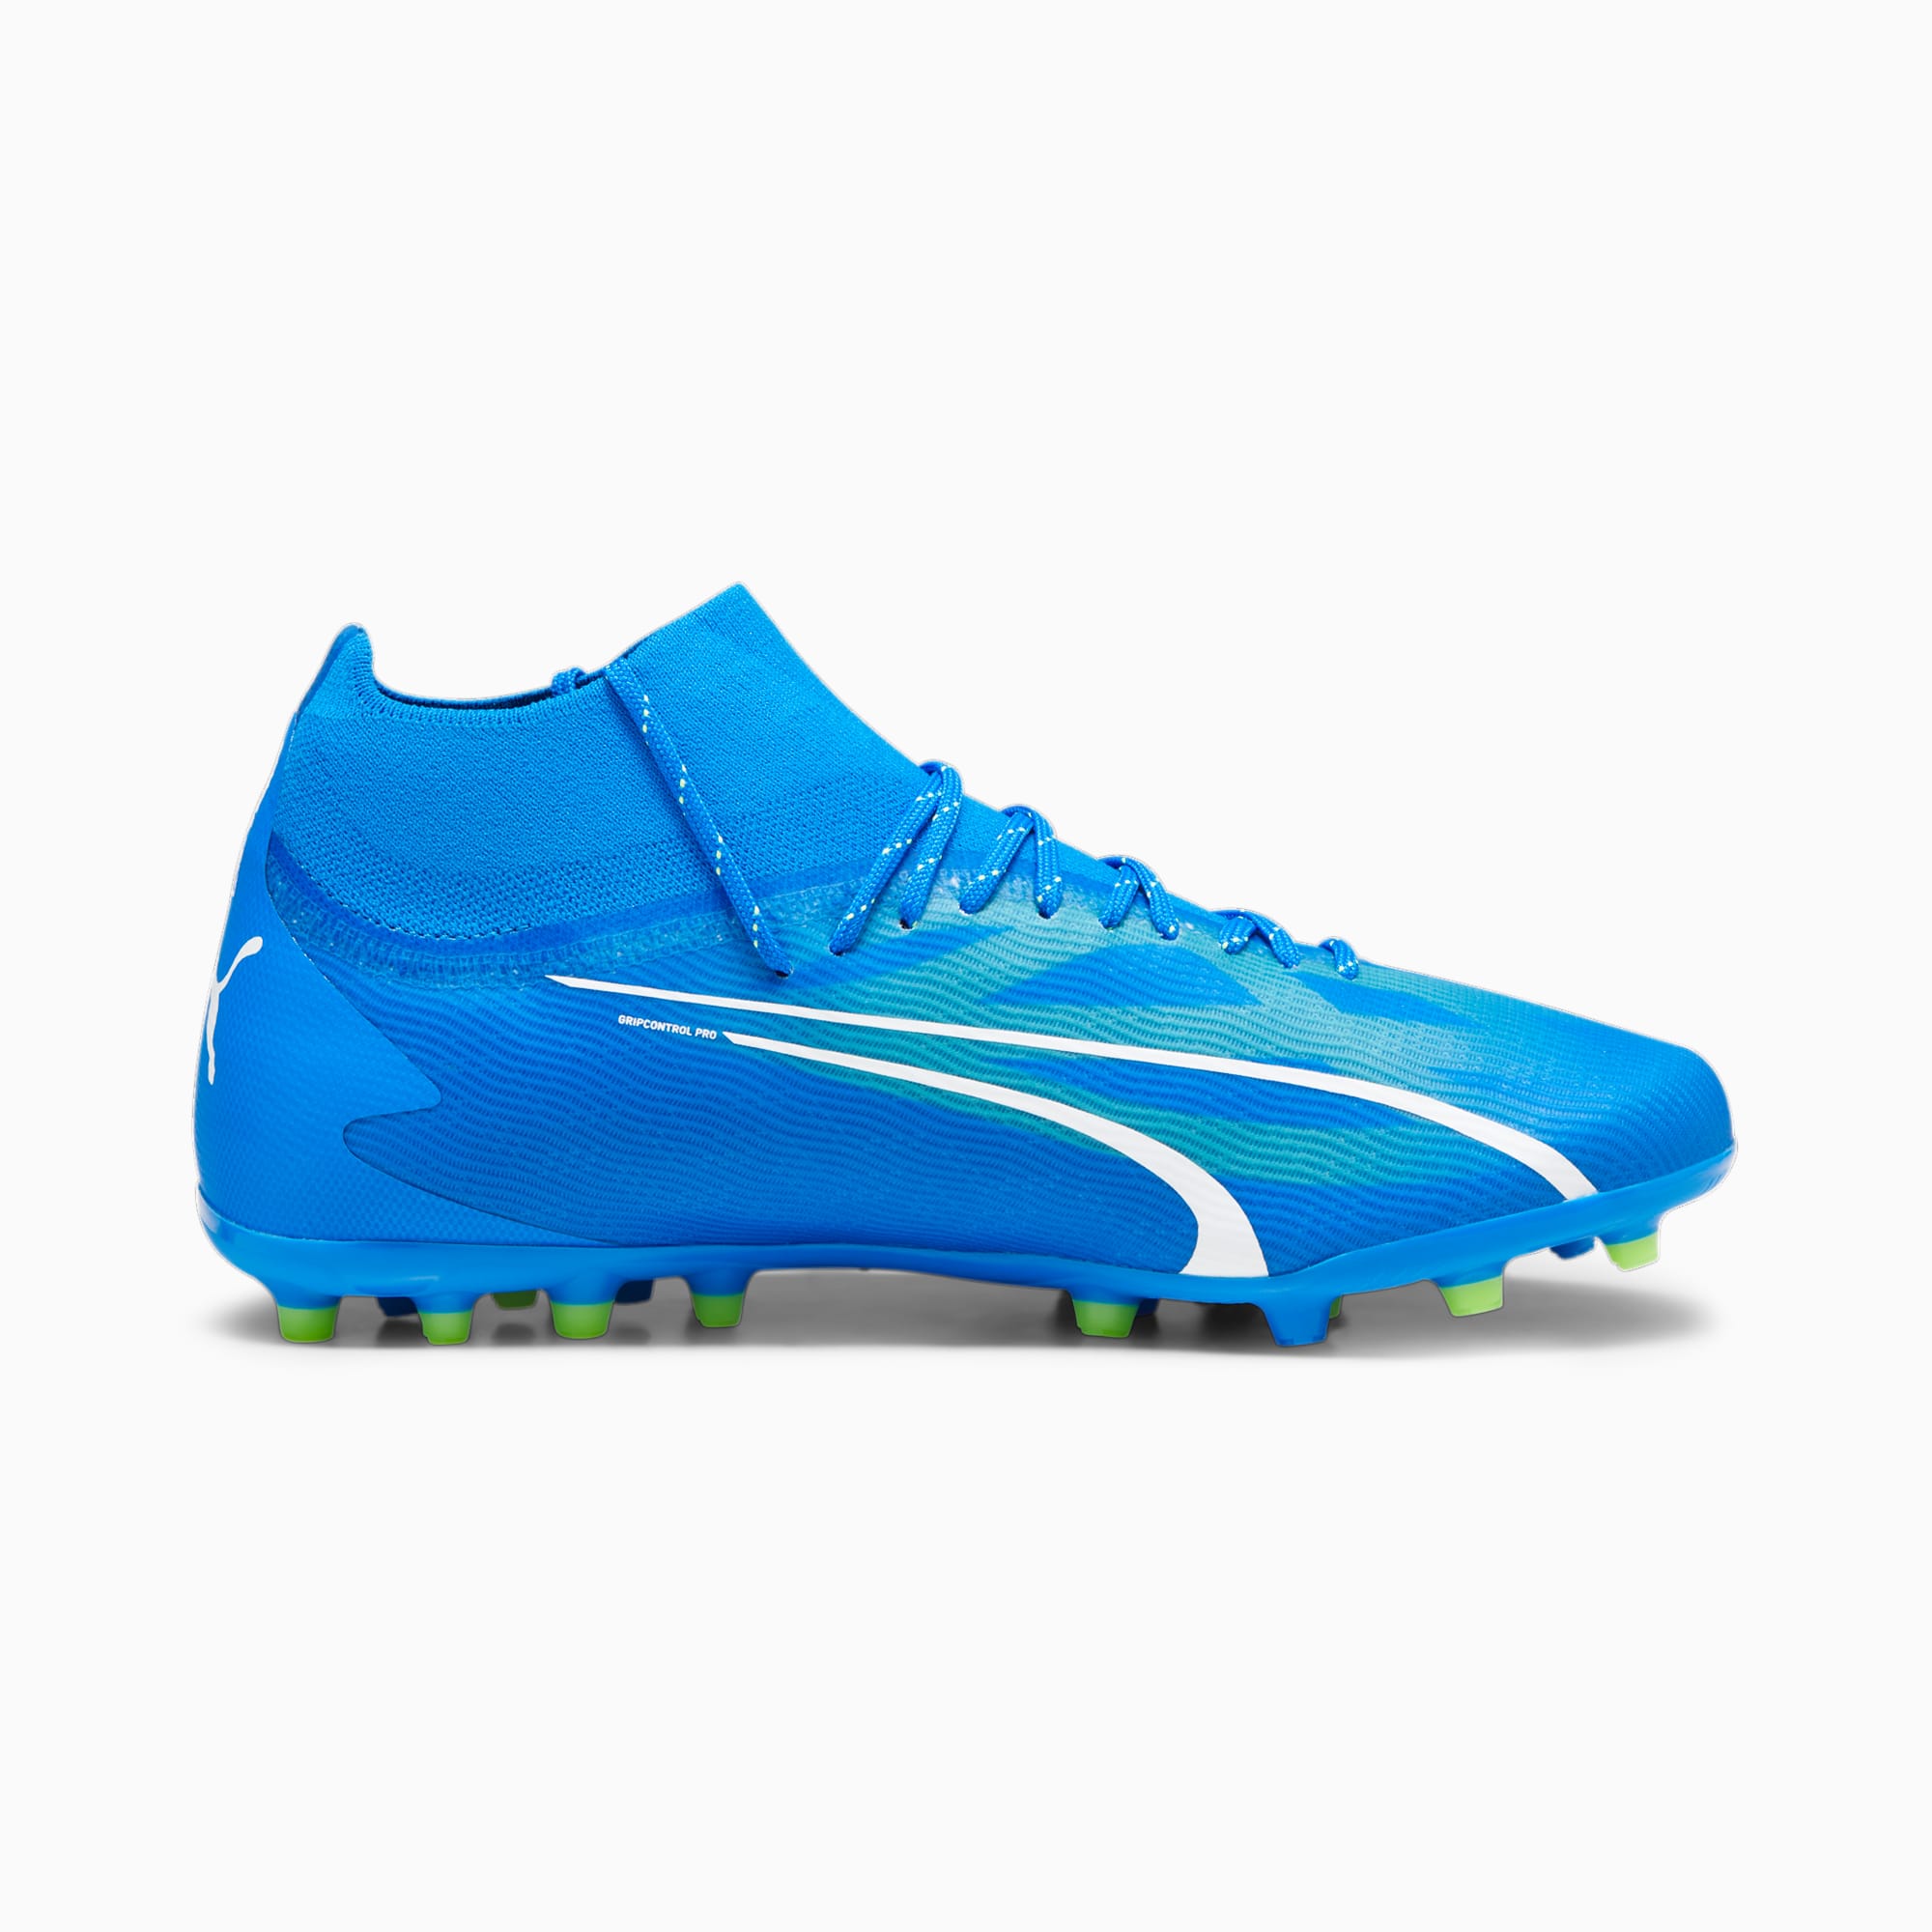 PUMA Chaussures De Football ULTRA PRO MG Pour Homme, Bleu/Vert/Blanc